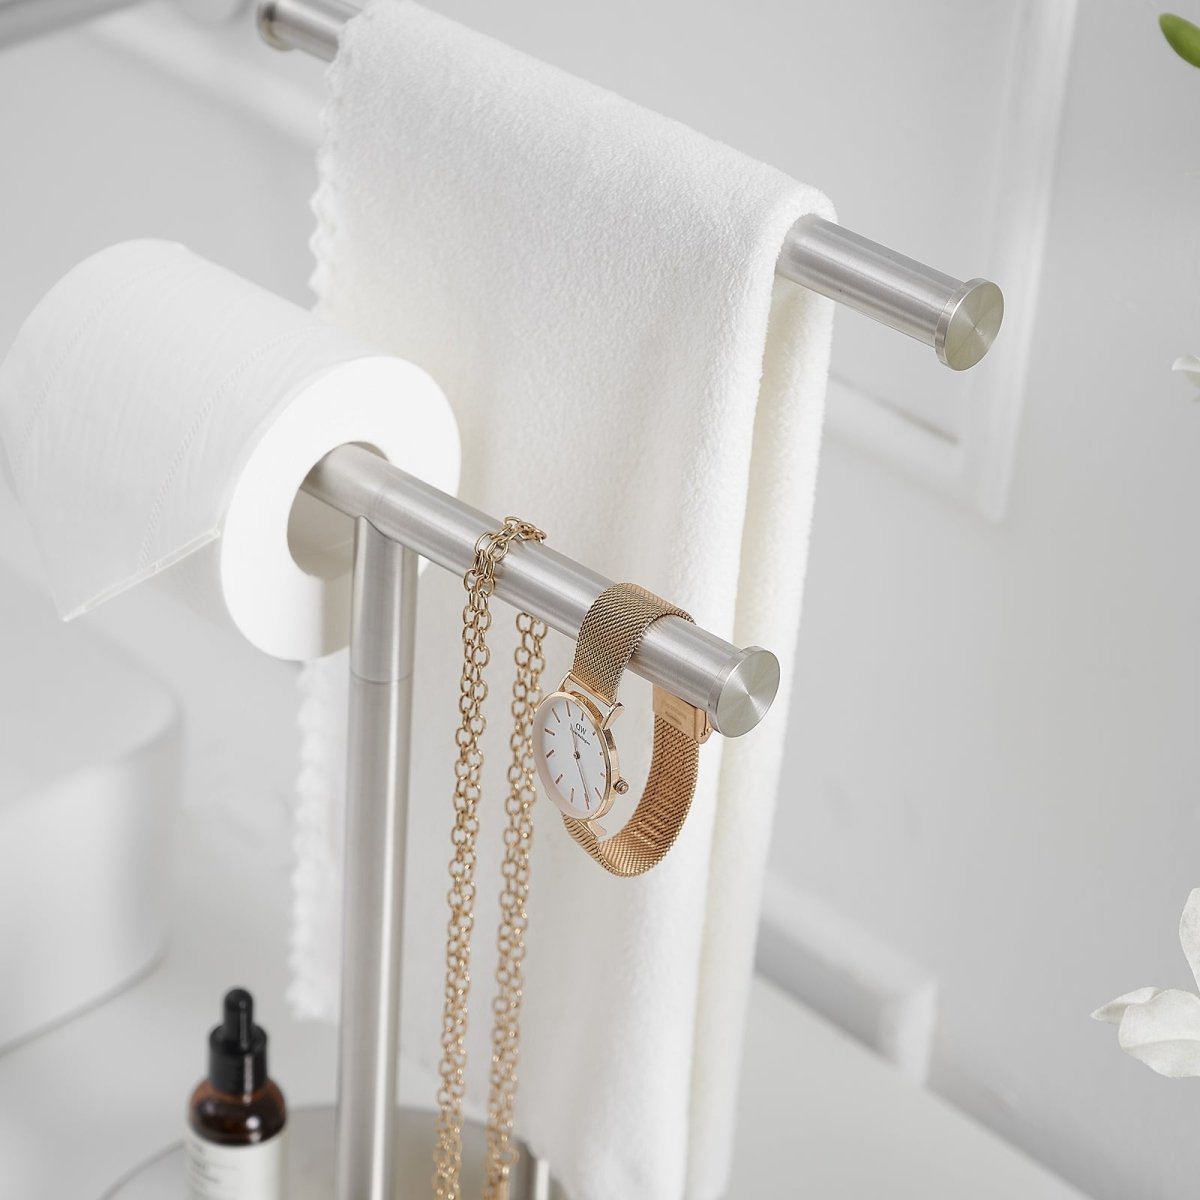 Toilet Paper Holder with 2-Tier Hand Towel Racks Nickel - buyfaucet.com